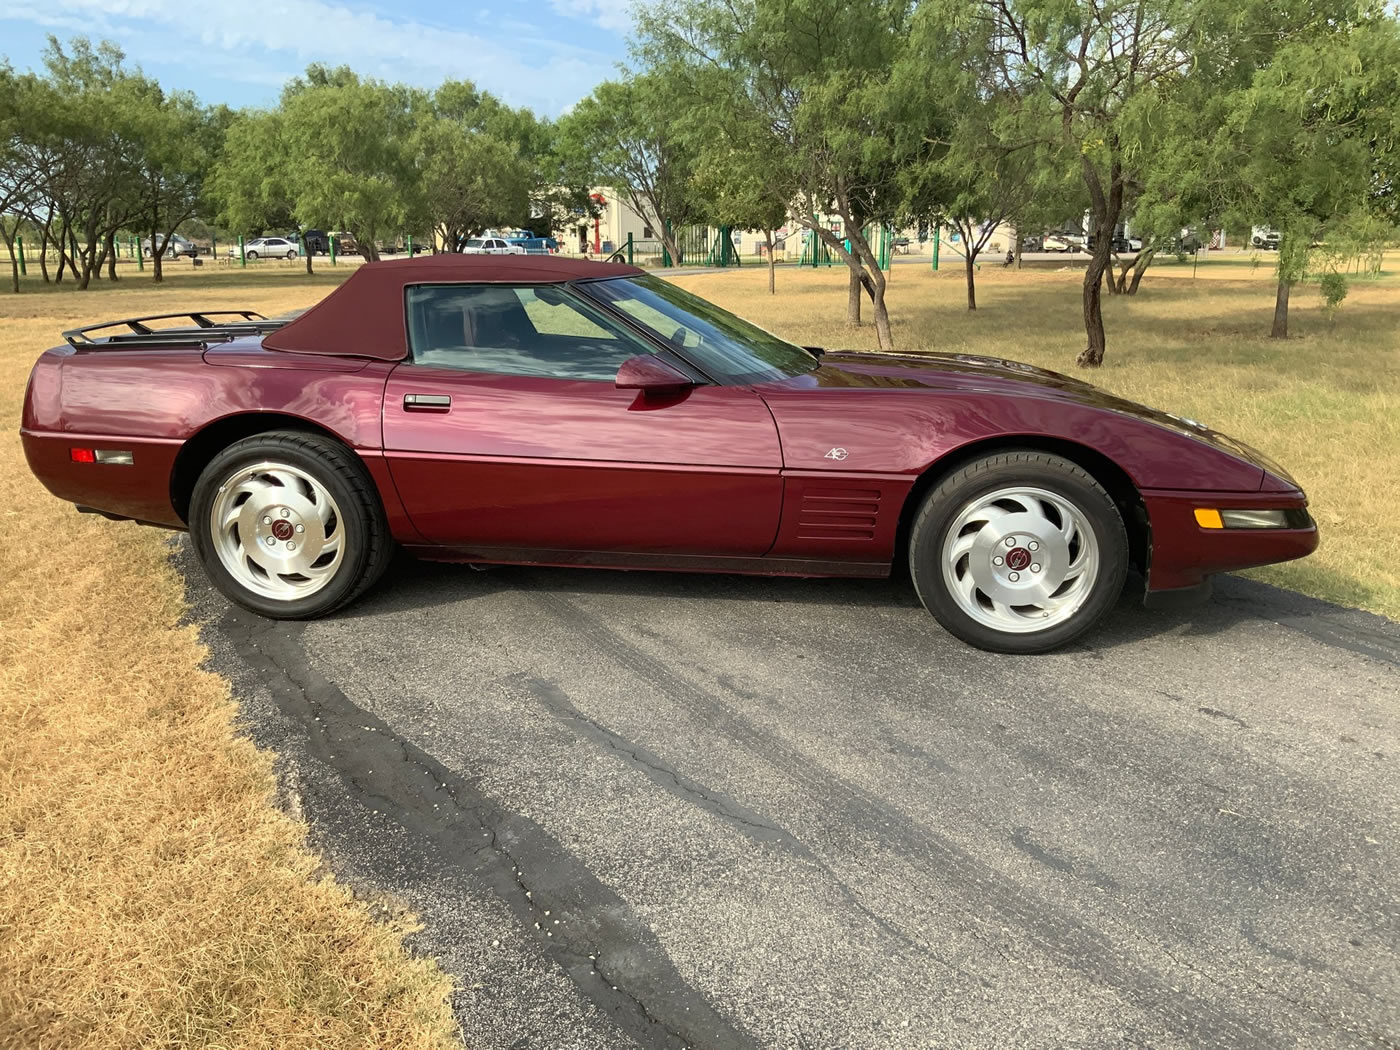 1993 Corvette 40th Anniversary Convertible